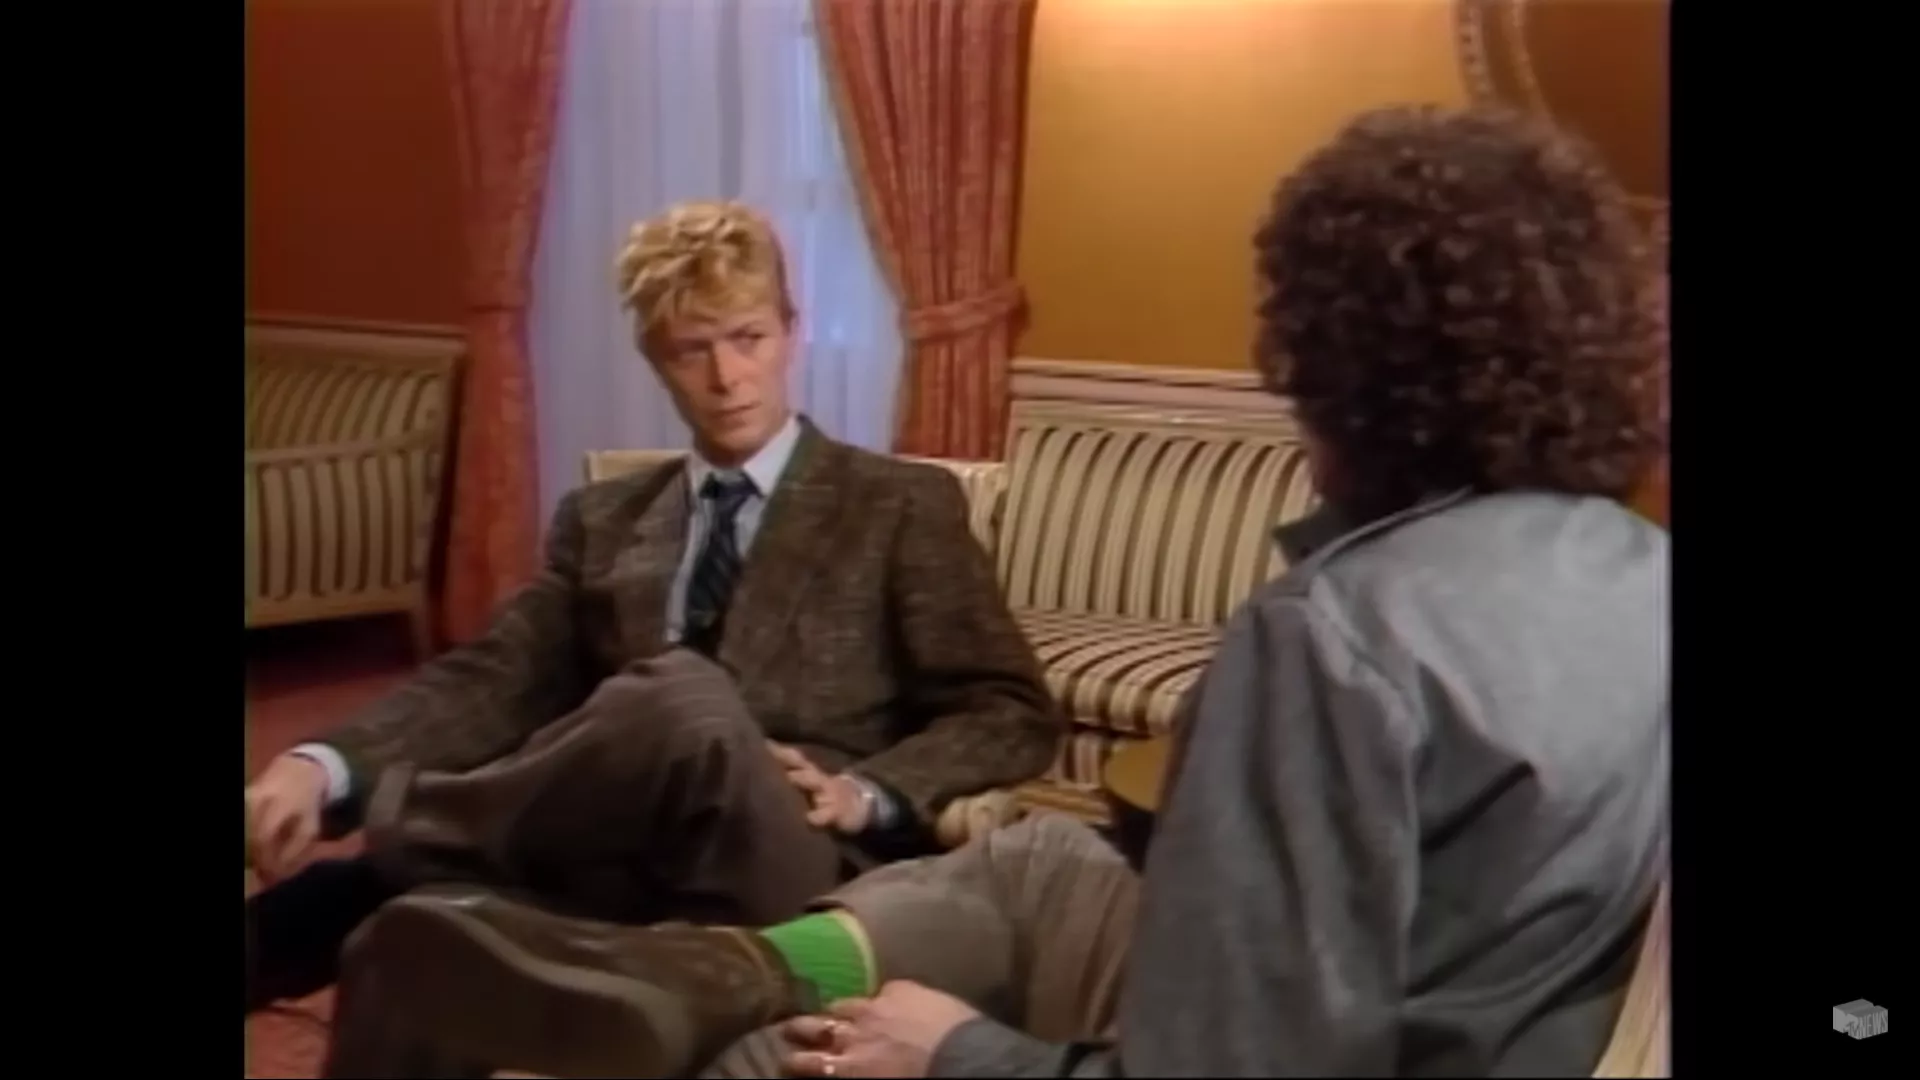 David Bowie konfronterede MTV: "Hvorfor spiller I så få sorte kunstnere?"